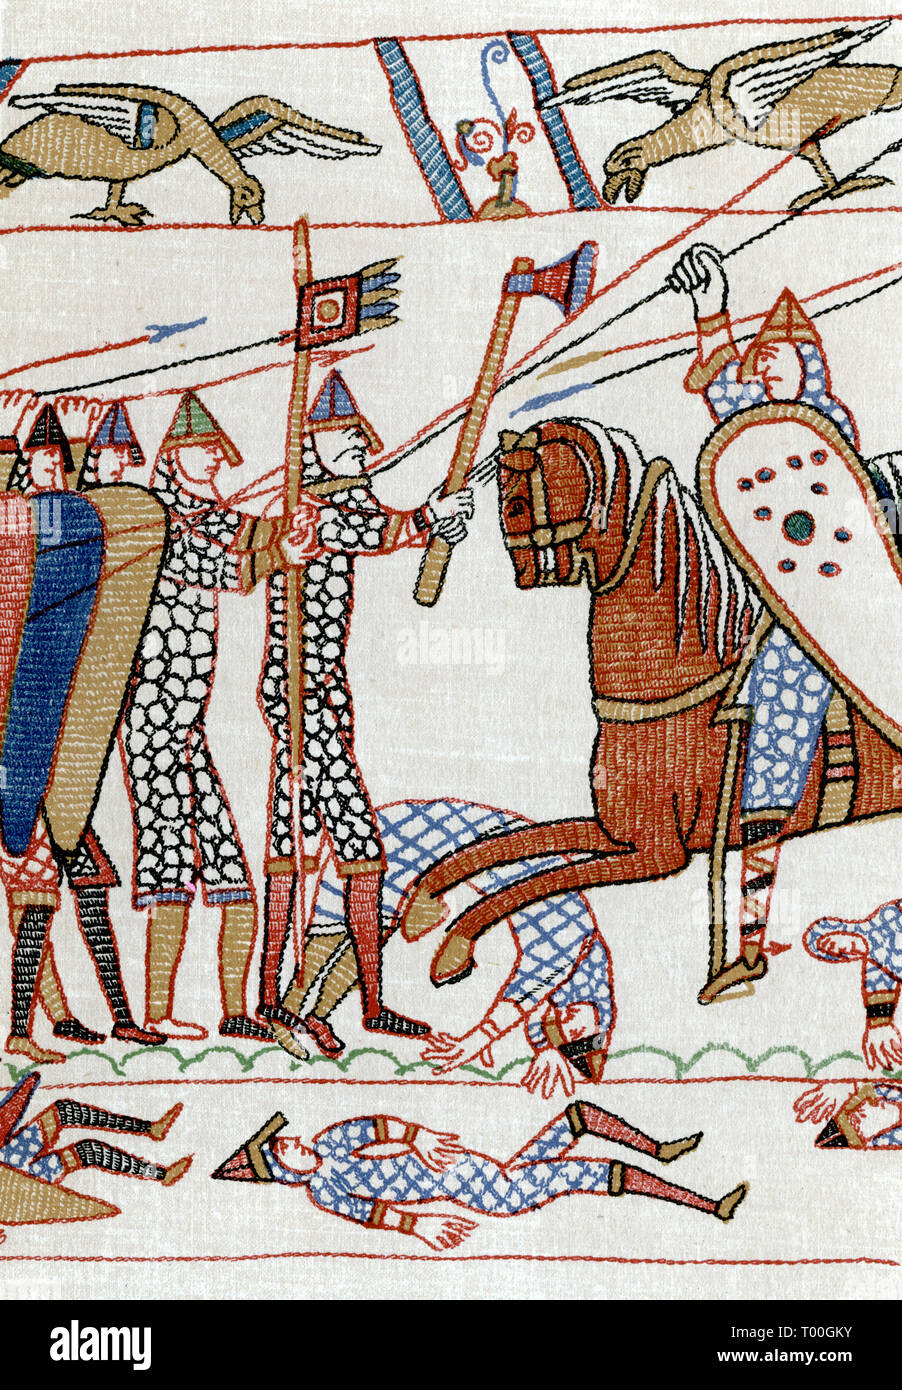 Eine Kampfszene während der Schlacht von Hastings, 11. Jahrhundert. Ein Detail des Wandteppichs von Bayeux. Die Wandteppiche von Bayeux (Tapisserie de Bayeux) zeigen die Ereignisse, die zur normannischen Eroberung Englands führten, in Bezug auf William, Herzog der Normandie, und Harold, Graf von Wessex, später König von England, und ihren Höhepunkt in der Schlacht von Hastings. Stockfoto